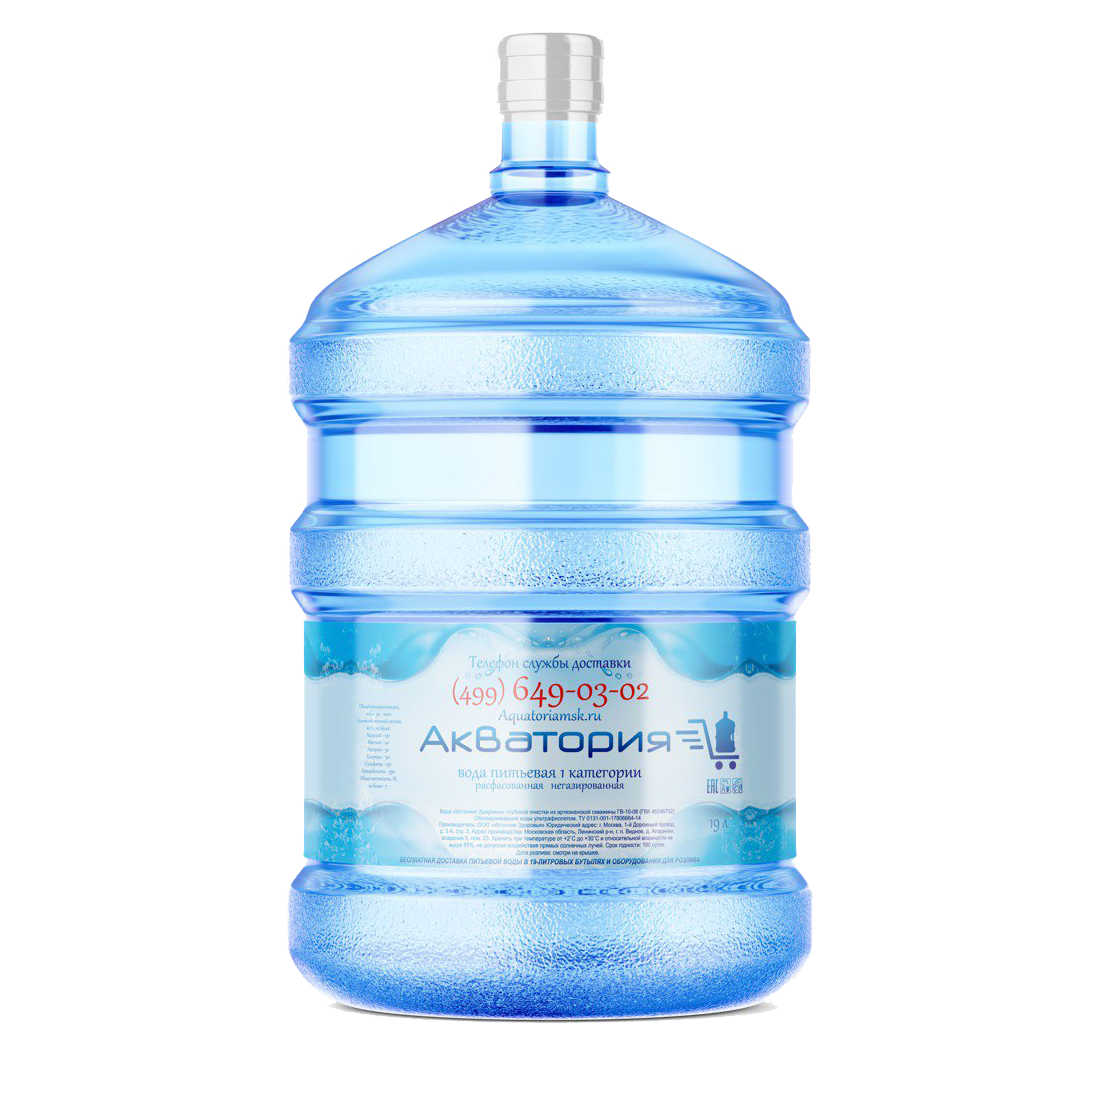 Питьевая артезианская вода "Акватория" 19л Первой категории